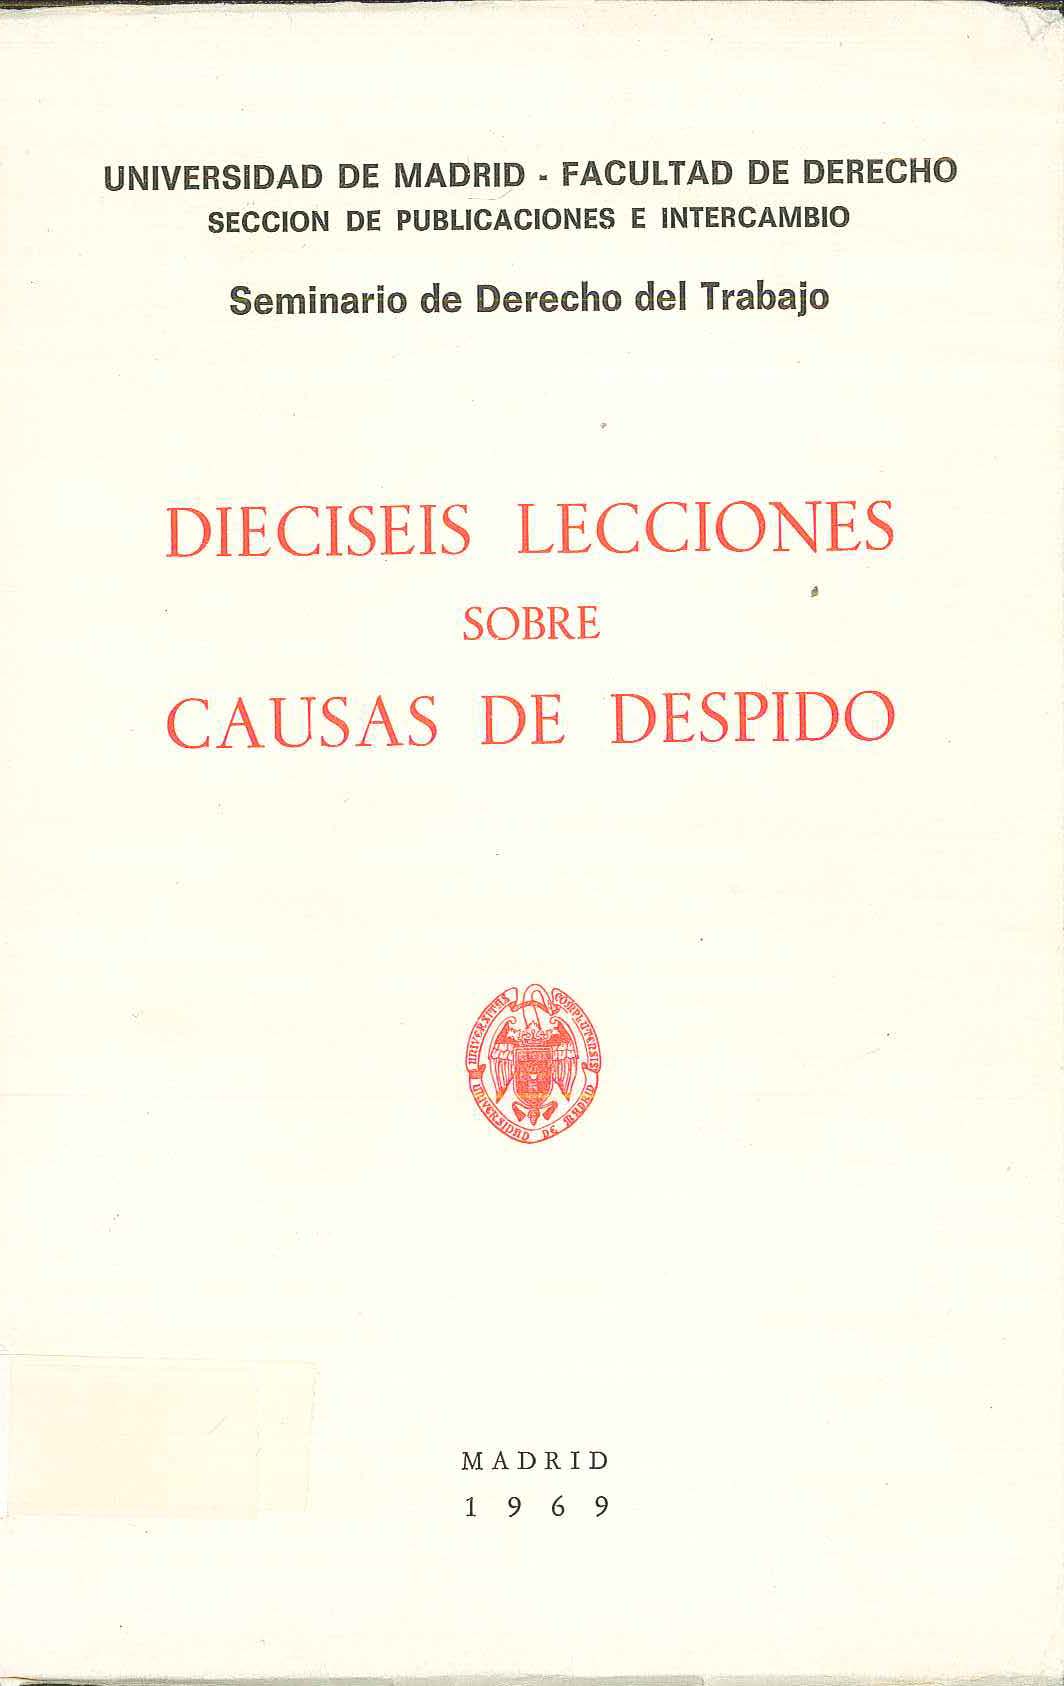 Imagen de portada del libro Dieciseis lecciones sobre causas de despido